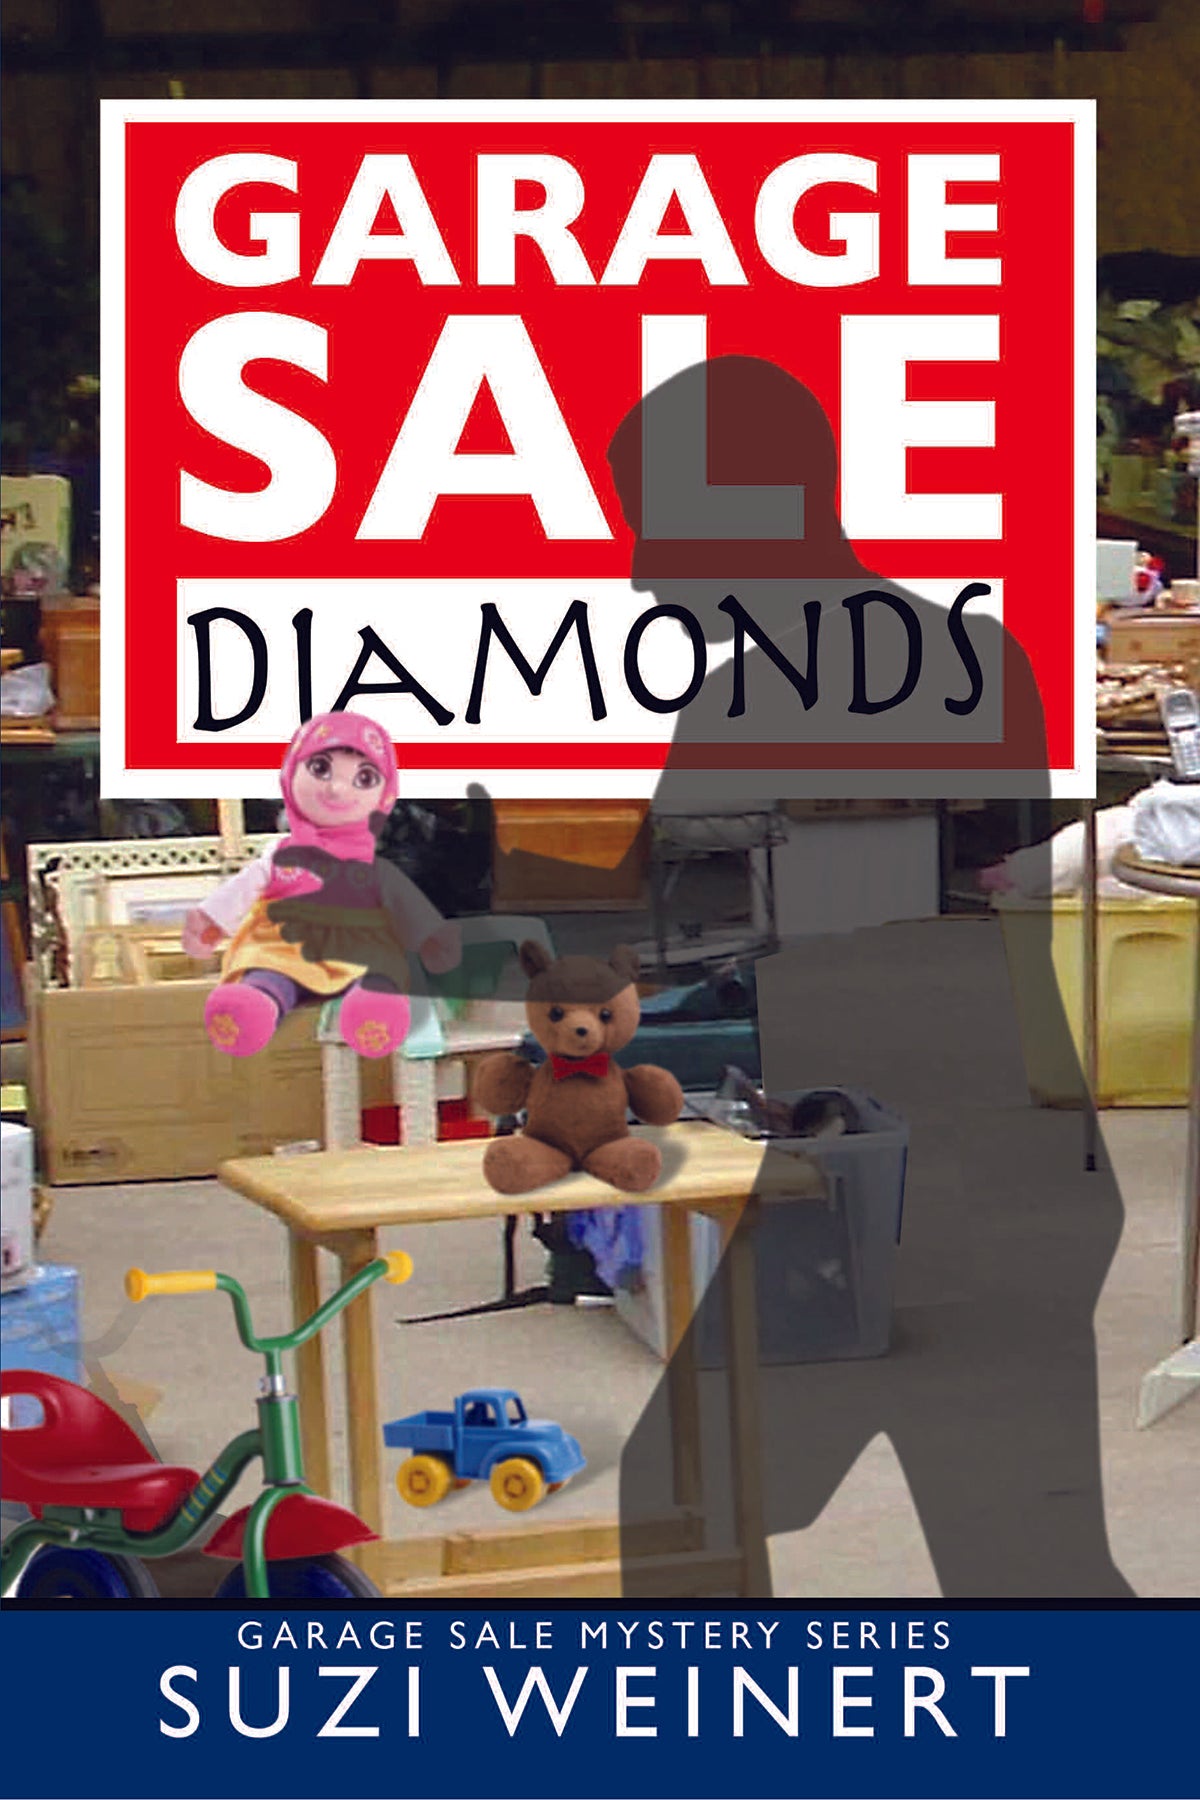 Garage Sale Diamonds by Suzi Weinert